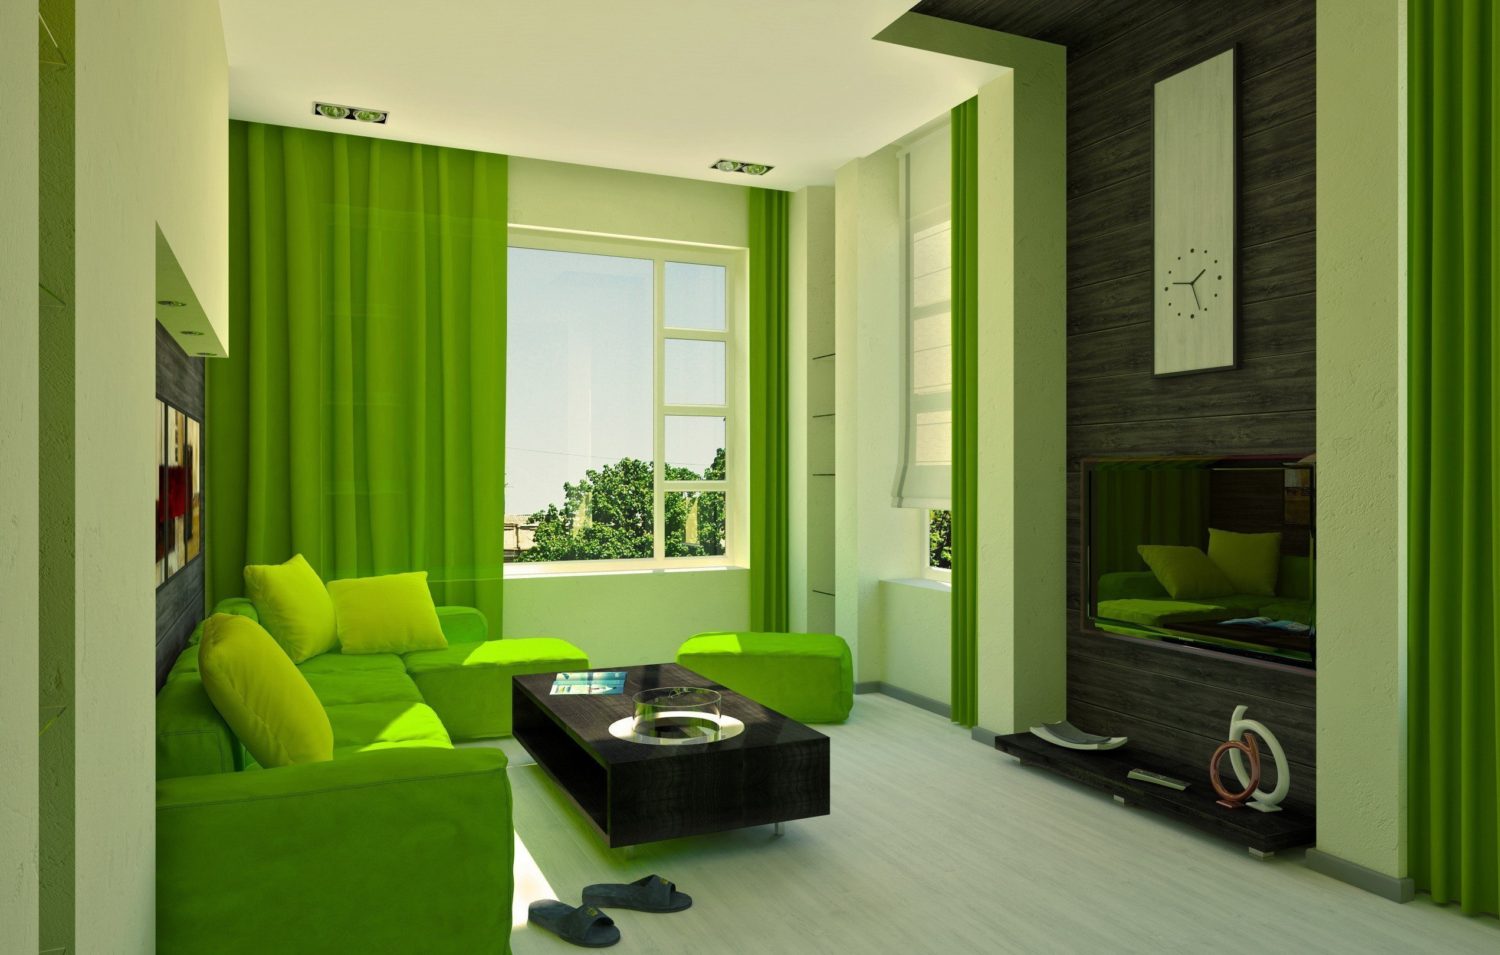 Варианты оформления комнаты обоями зеленых цветов